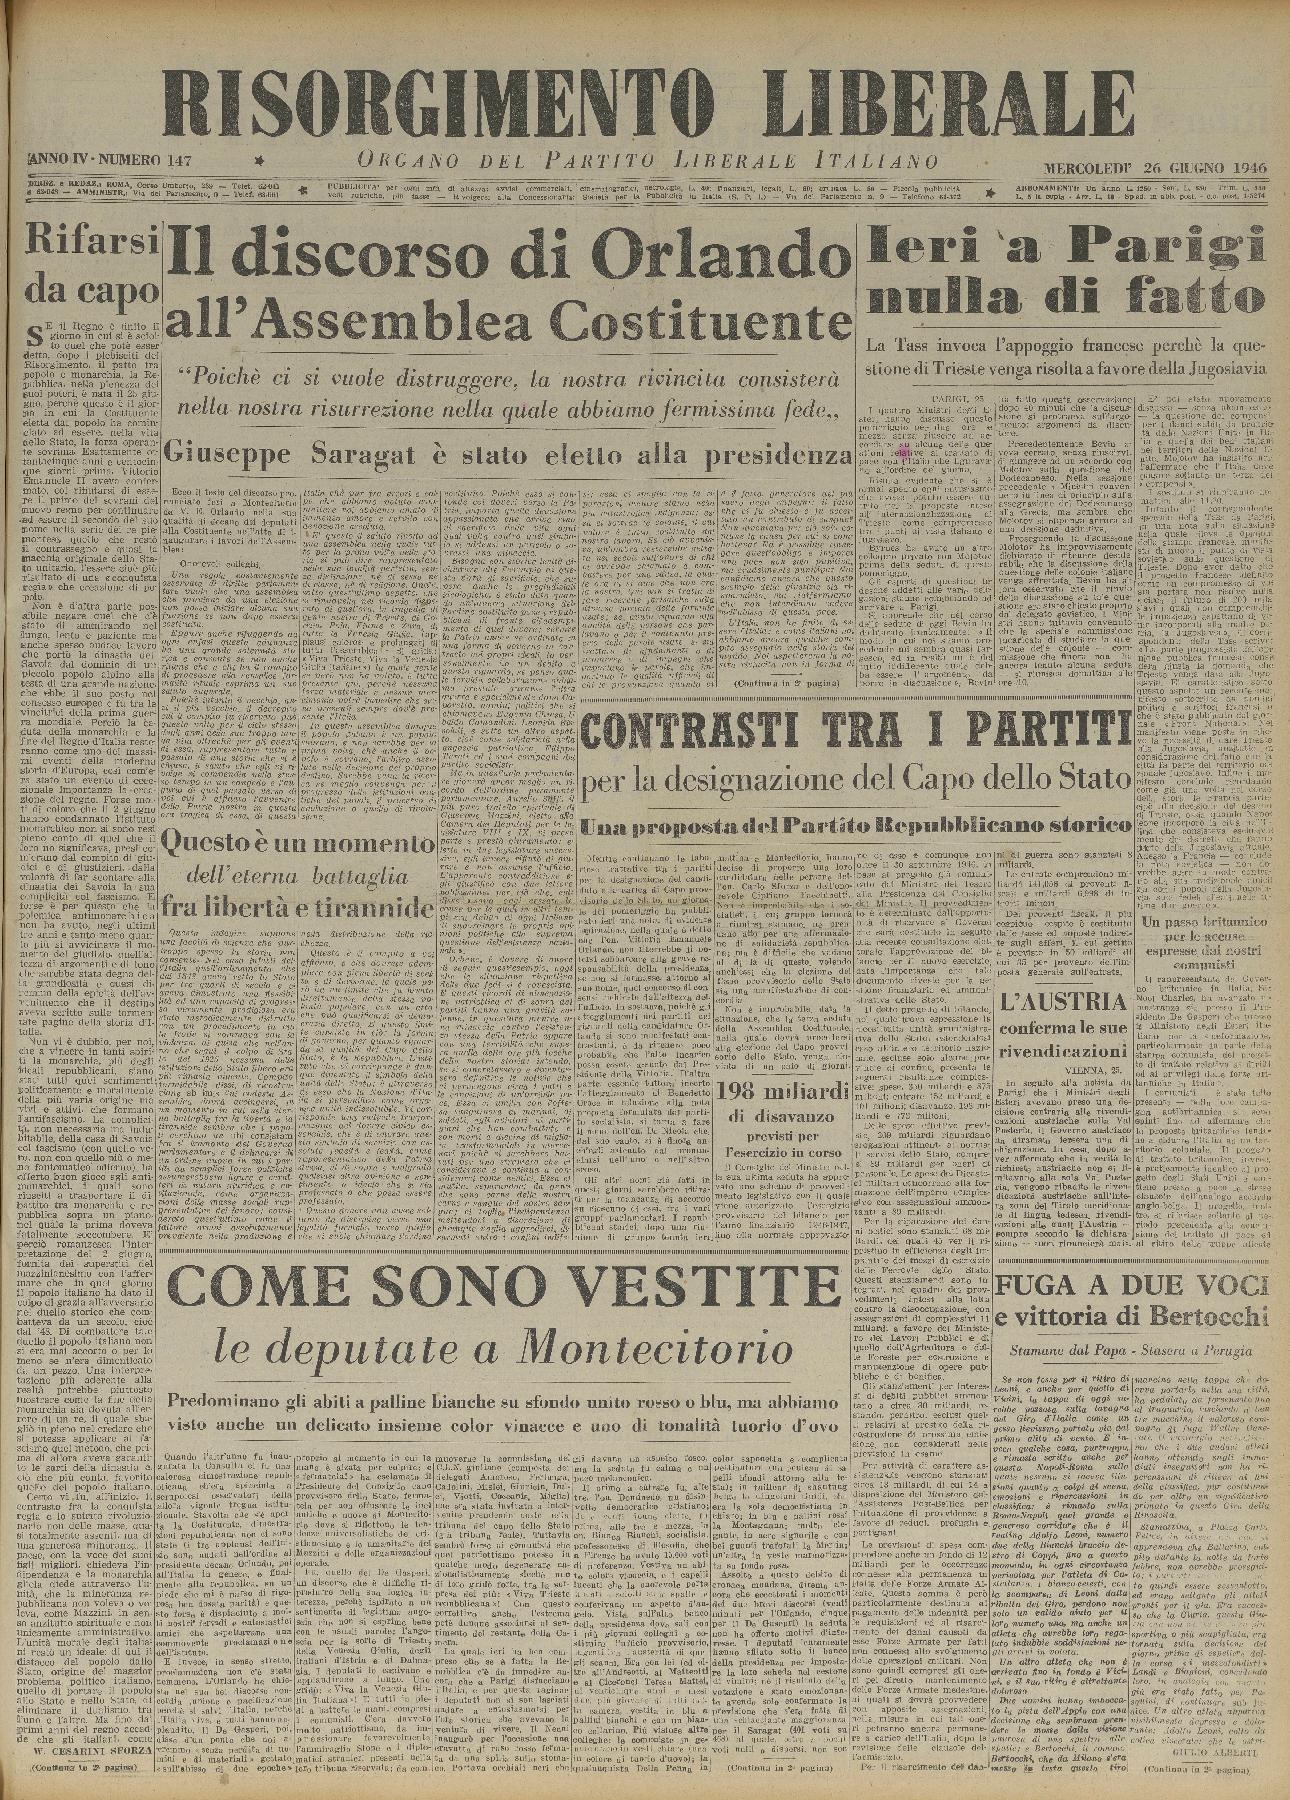 26 giugno 1946 - Prima pagina del quotidiano "Risorgimento Liberale".